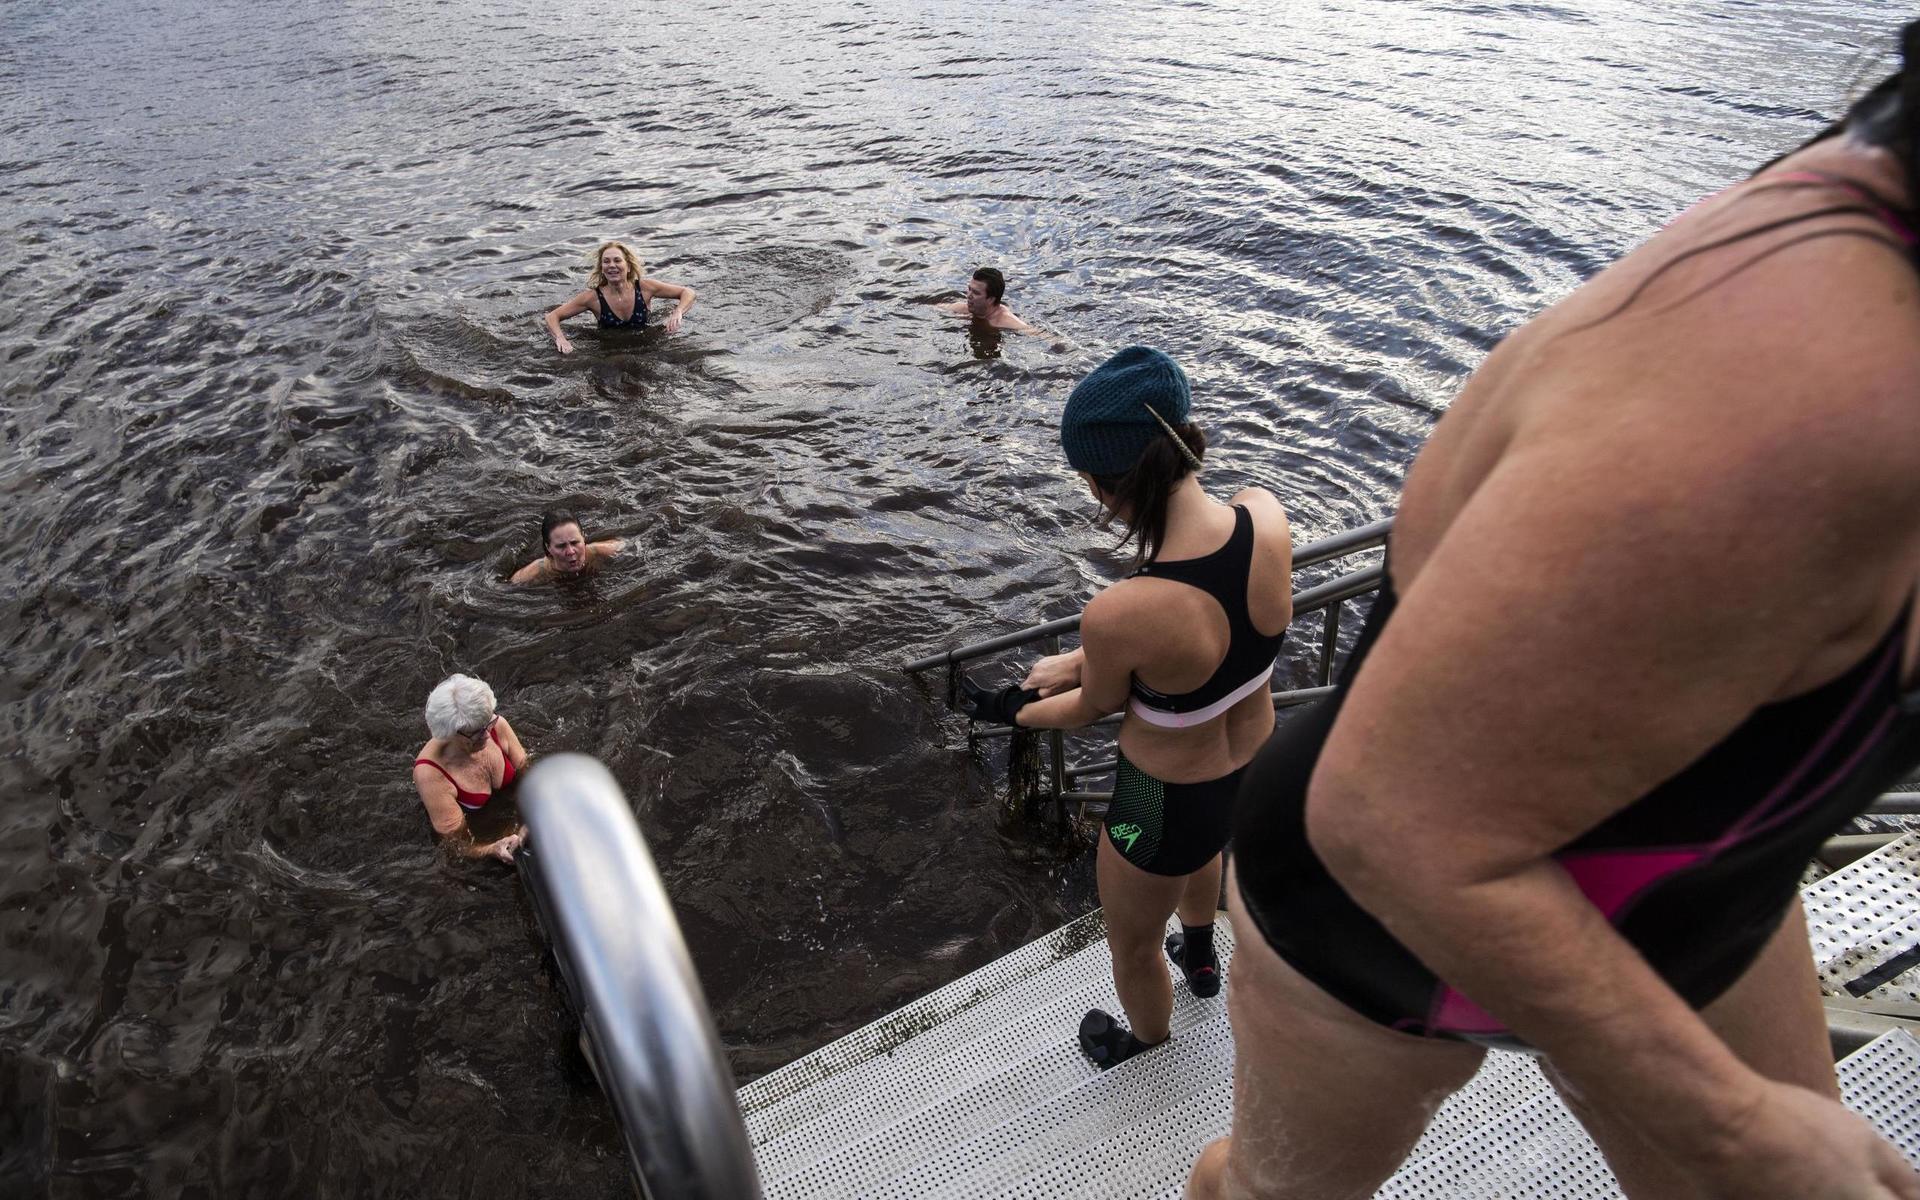 Facebookgruppen gör det lätt att hitta badkompisar och det rekommenderas inte att man går i det kalla vattnet ensam. Här är det Carina Haggren som gör sig redo för ett dopp, medan Marie Bengtsson badat färdigt för den här gången.